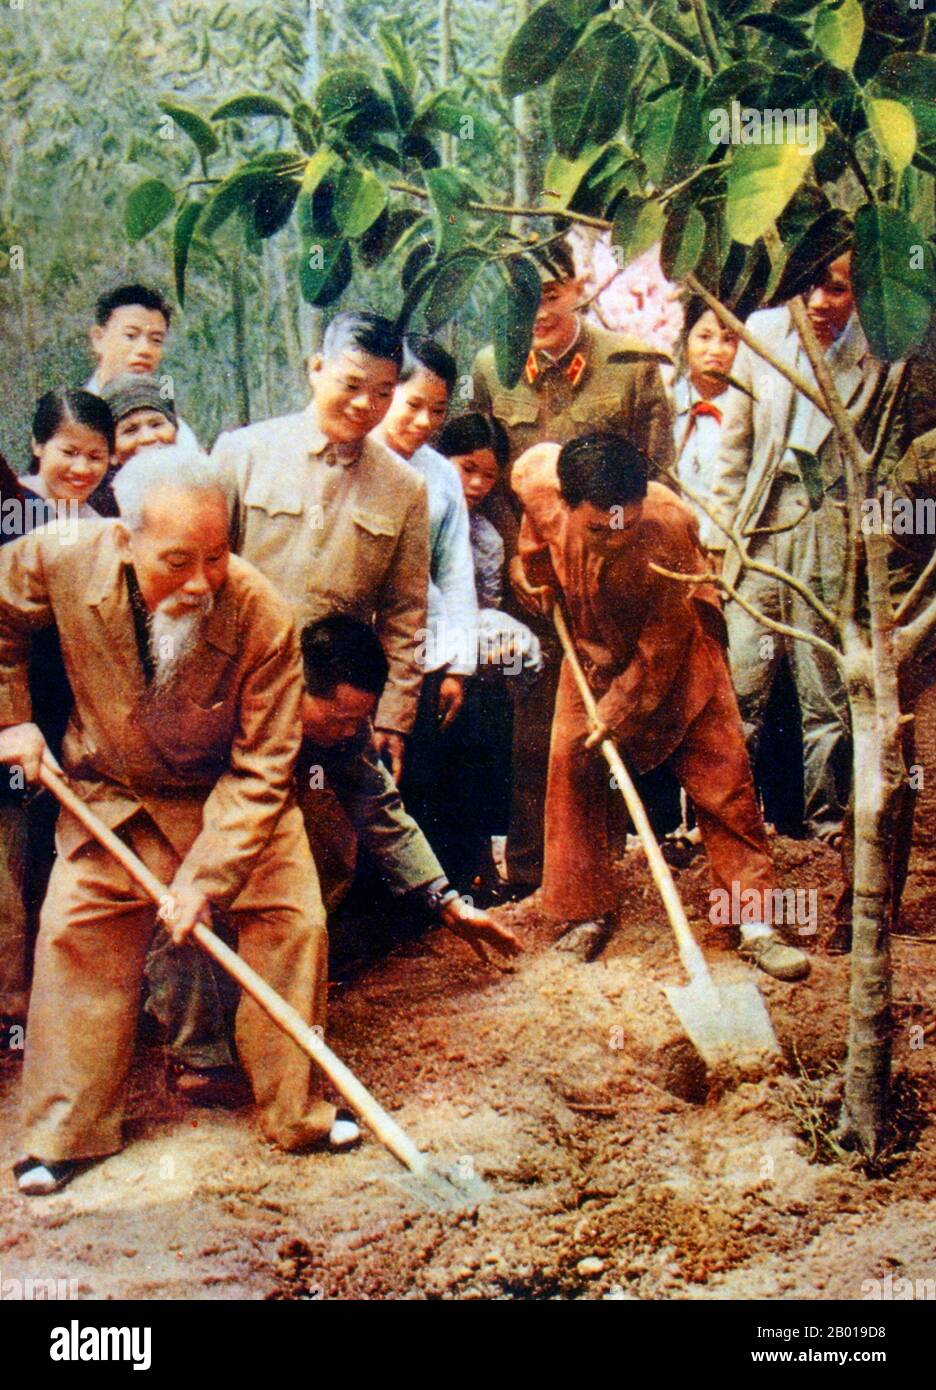 Vietnam: Präsident Ho Chi Minh (19. Mai 1890 - 3. September 1969) Pflanzen von Bäumen während der Tet-Ferien in bat bat, c.. 1969. Hồ Chí Minh, geboren als Nguyễn Sinh Cung und auch bekannt als Nguyễn Ái Quốc, war ein vietnamesischer revolutionärer Führer, der Premierminister (1946-1955) und Präsident (1945-1969) der Demokratischen Republik Vietnam (Nordvietnam) war. Er gründete die Demokratische Republik Vietnam und leitete die Viet Cong während des Vietnamkrieges bis zu seinem Tod. Stockfoto